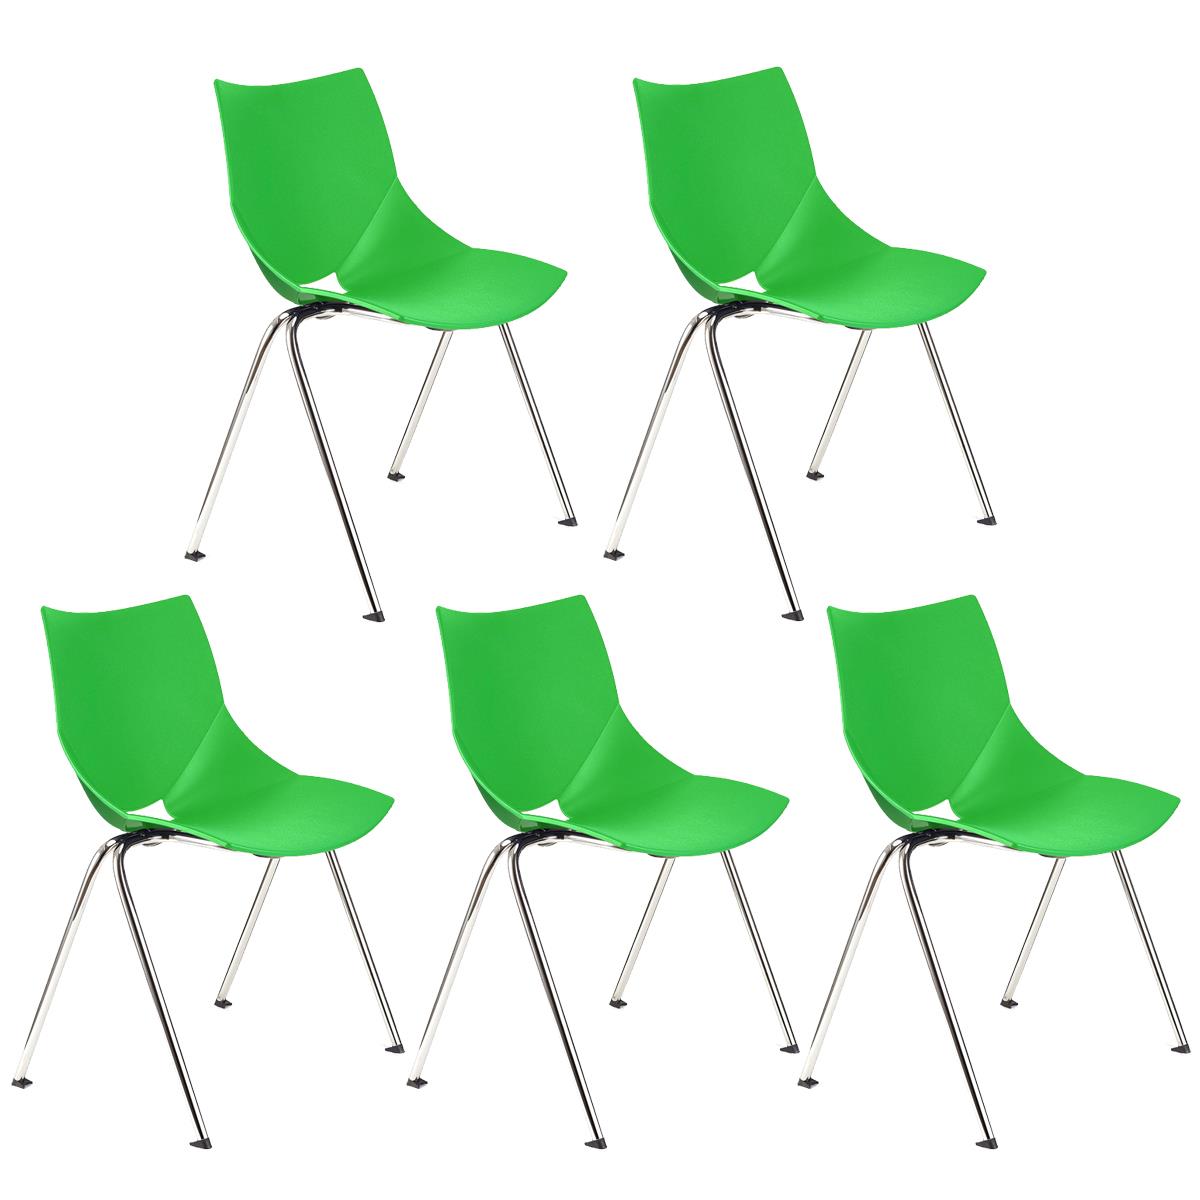 Lote 5 Cadeiras de Visita AMIR, Confortável e Prática, Empilhável, Cor Verde